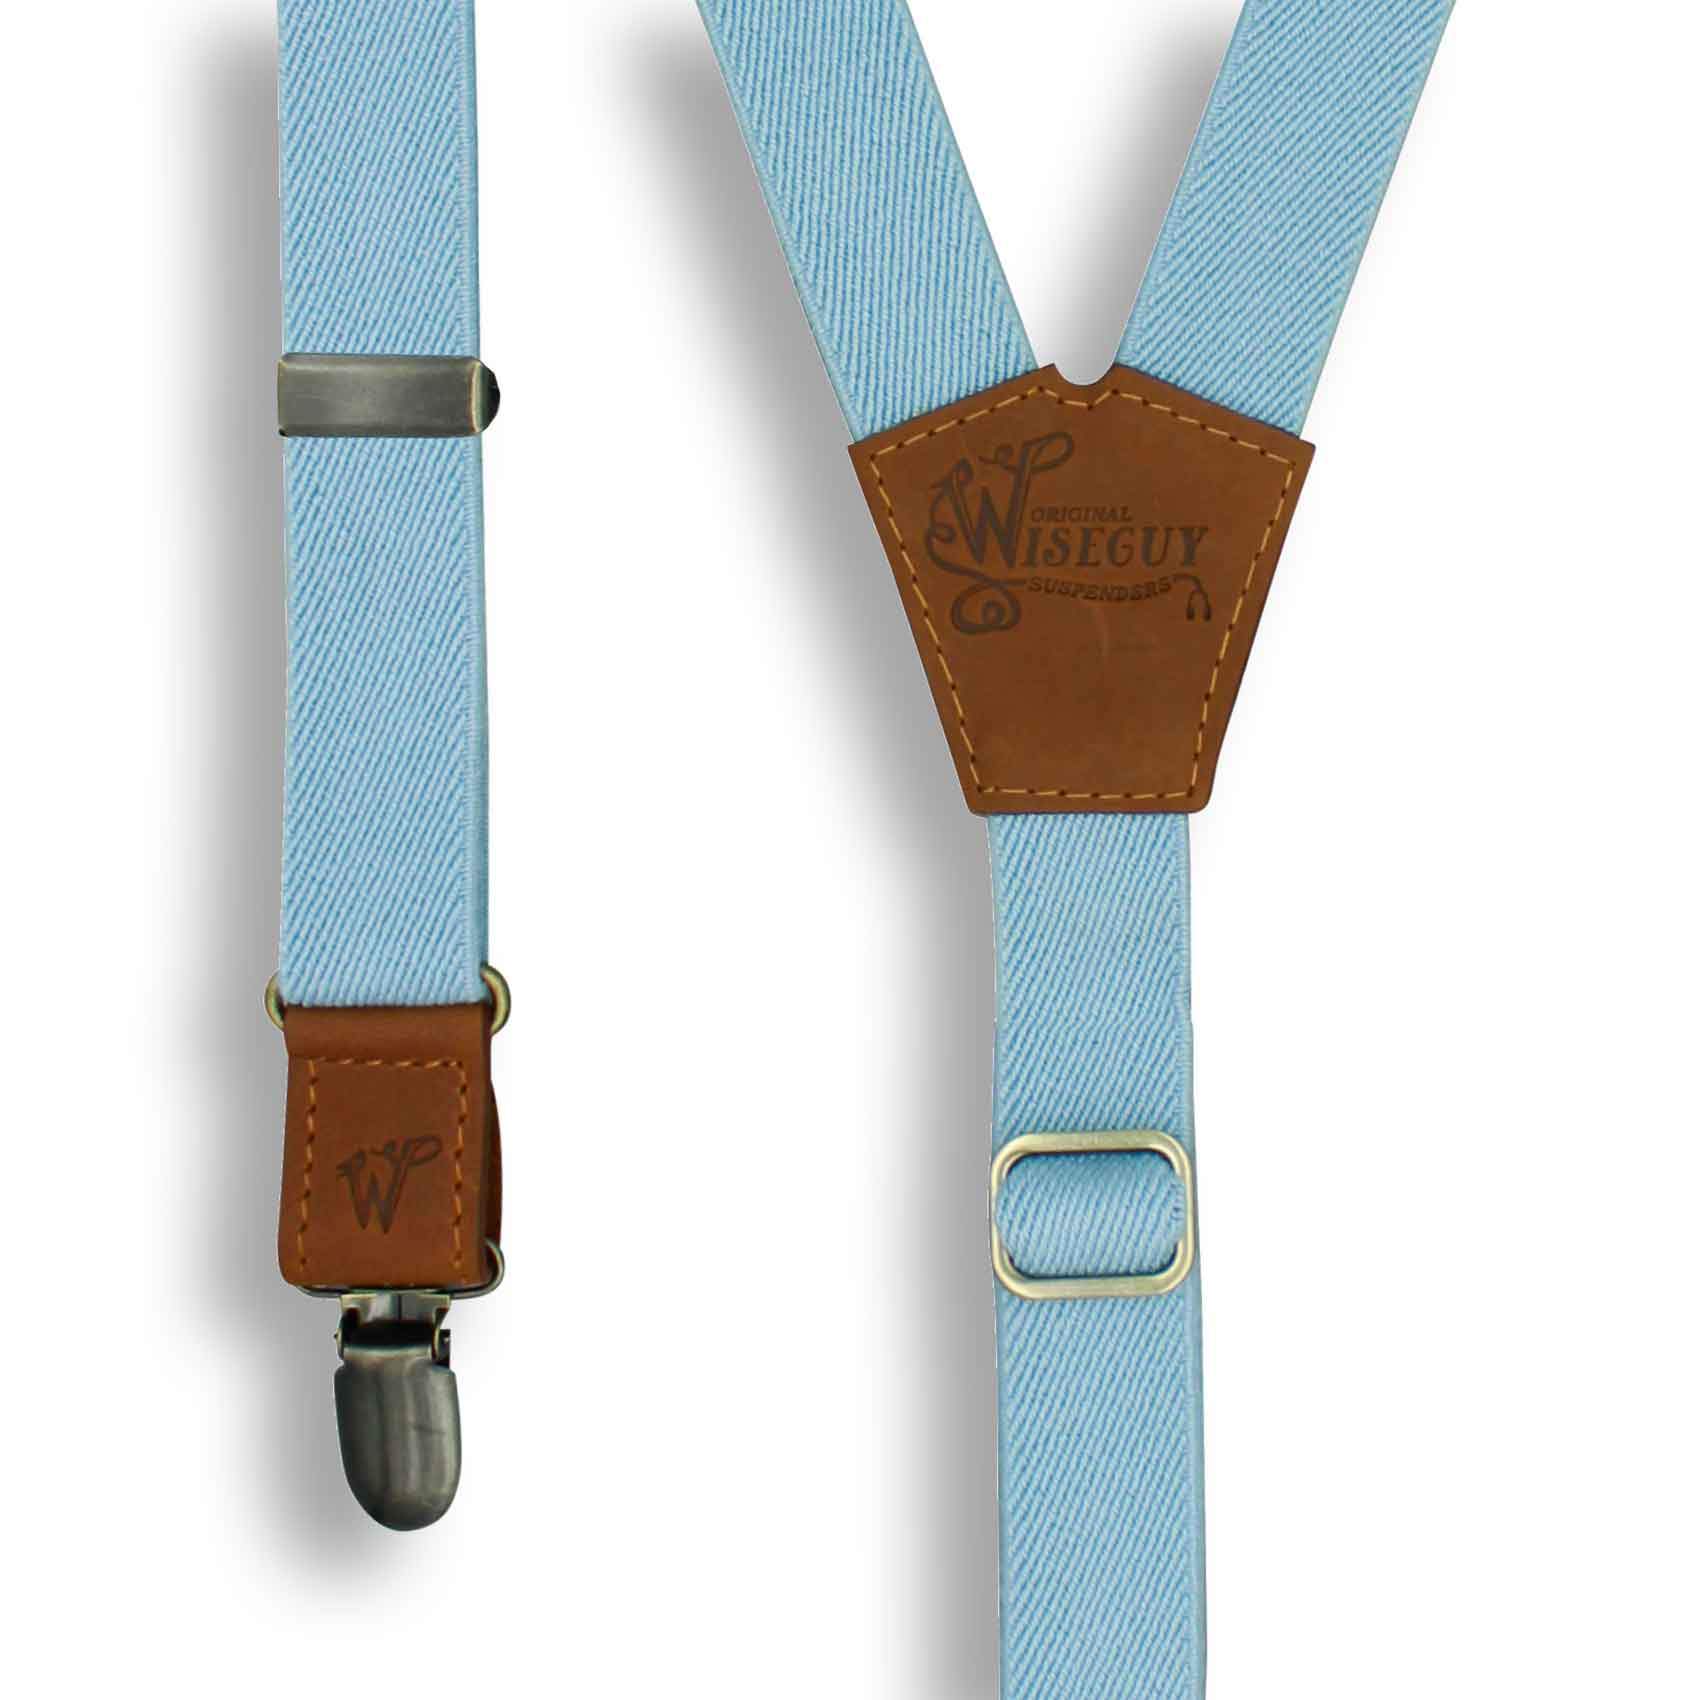 Cloud Blue Wedding Suspenders thin Y back on Camel Brown 1 inch wide - Wiseguy Suspenders